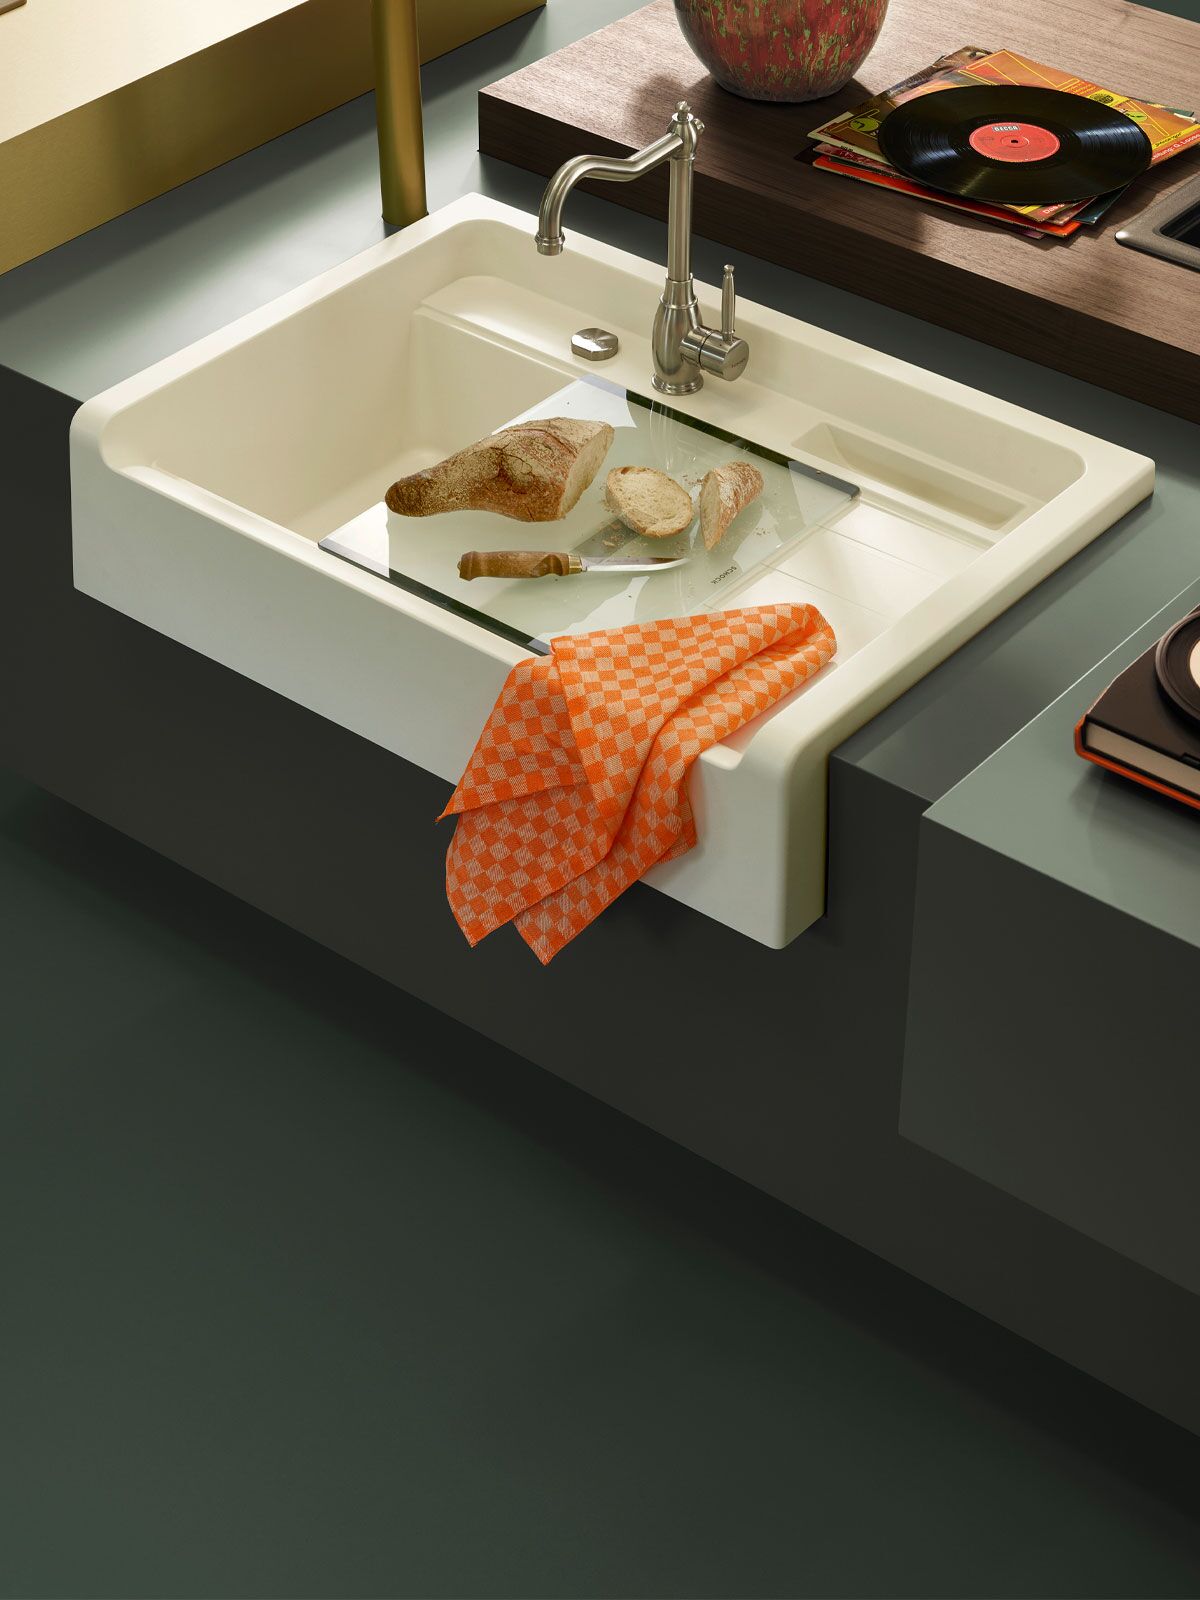 Modular kitchen sink